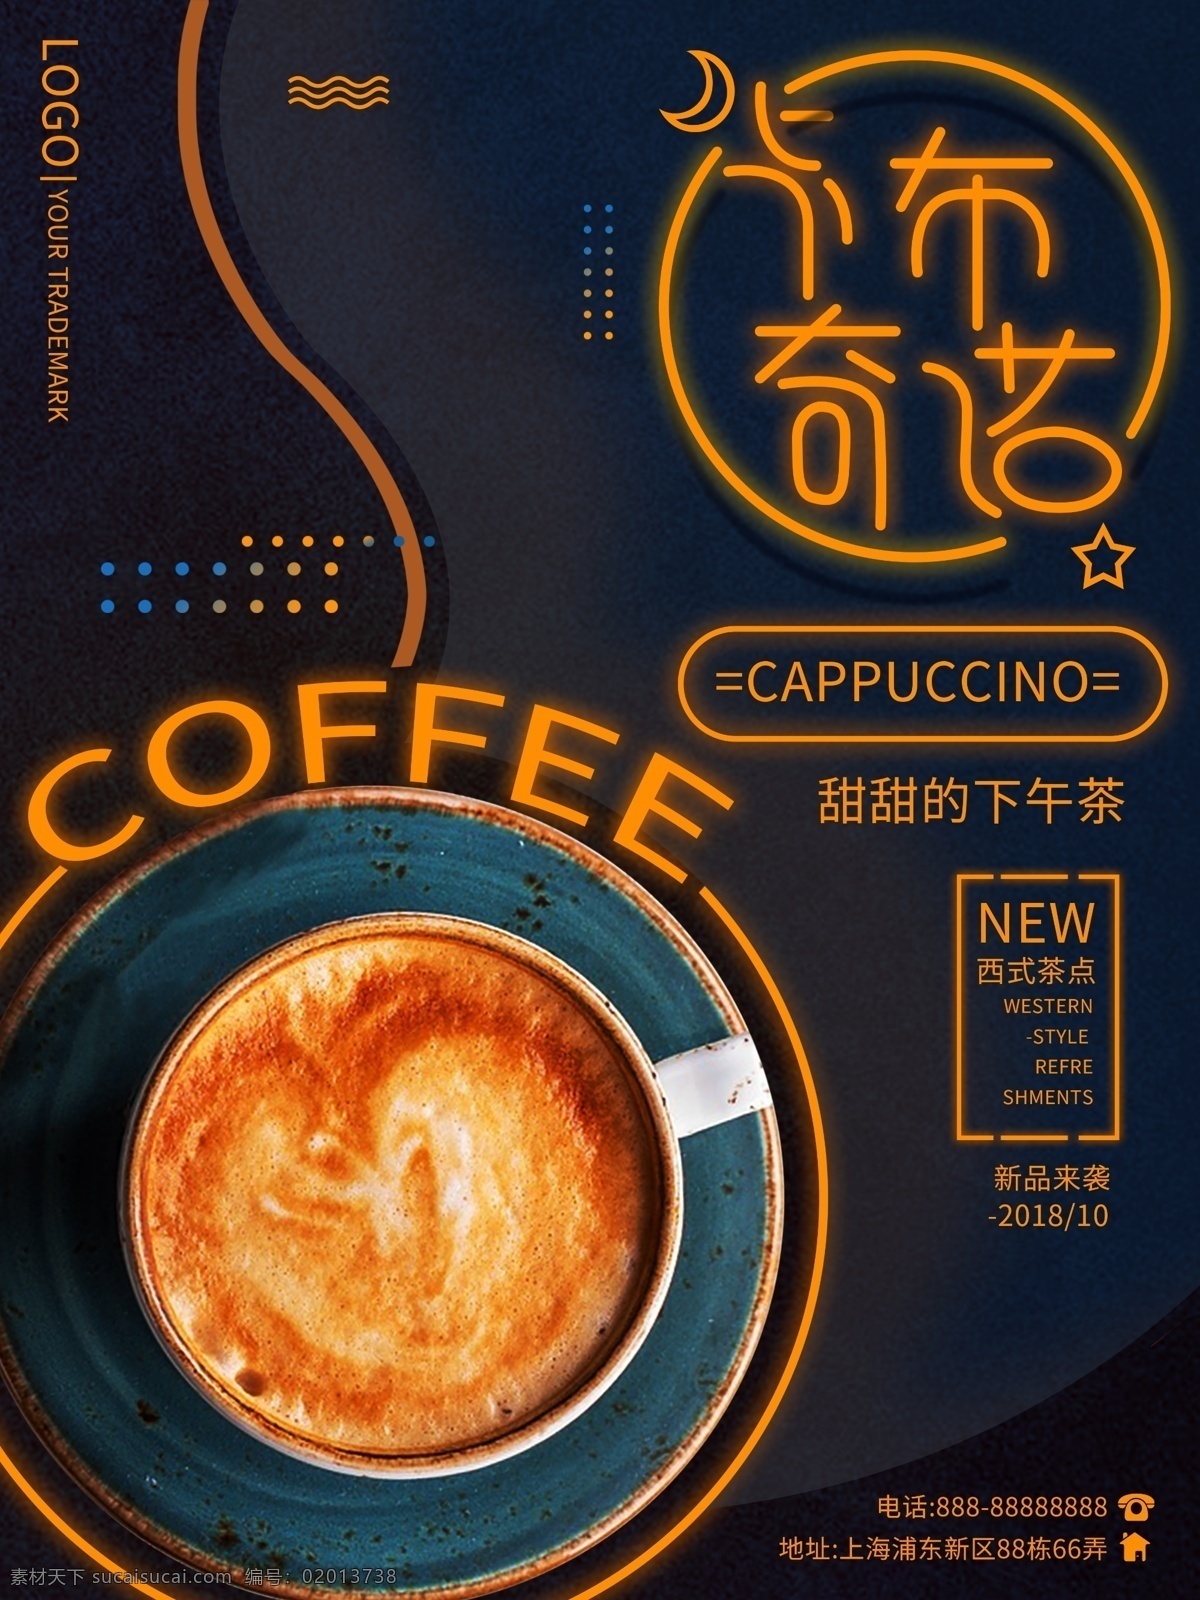 原创 创意 咖啡 卡布 奇诺 热饮 海报 咖啡海报 饮料 下午茶 蓝色 卡布奇诺 美味